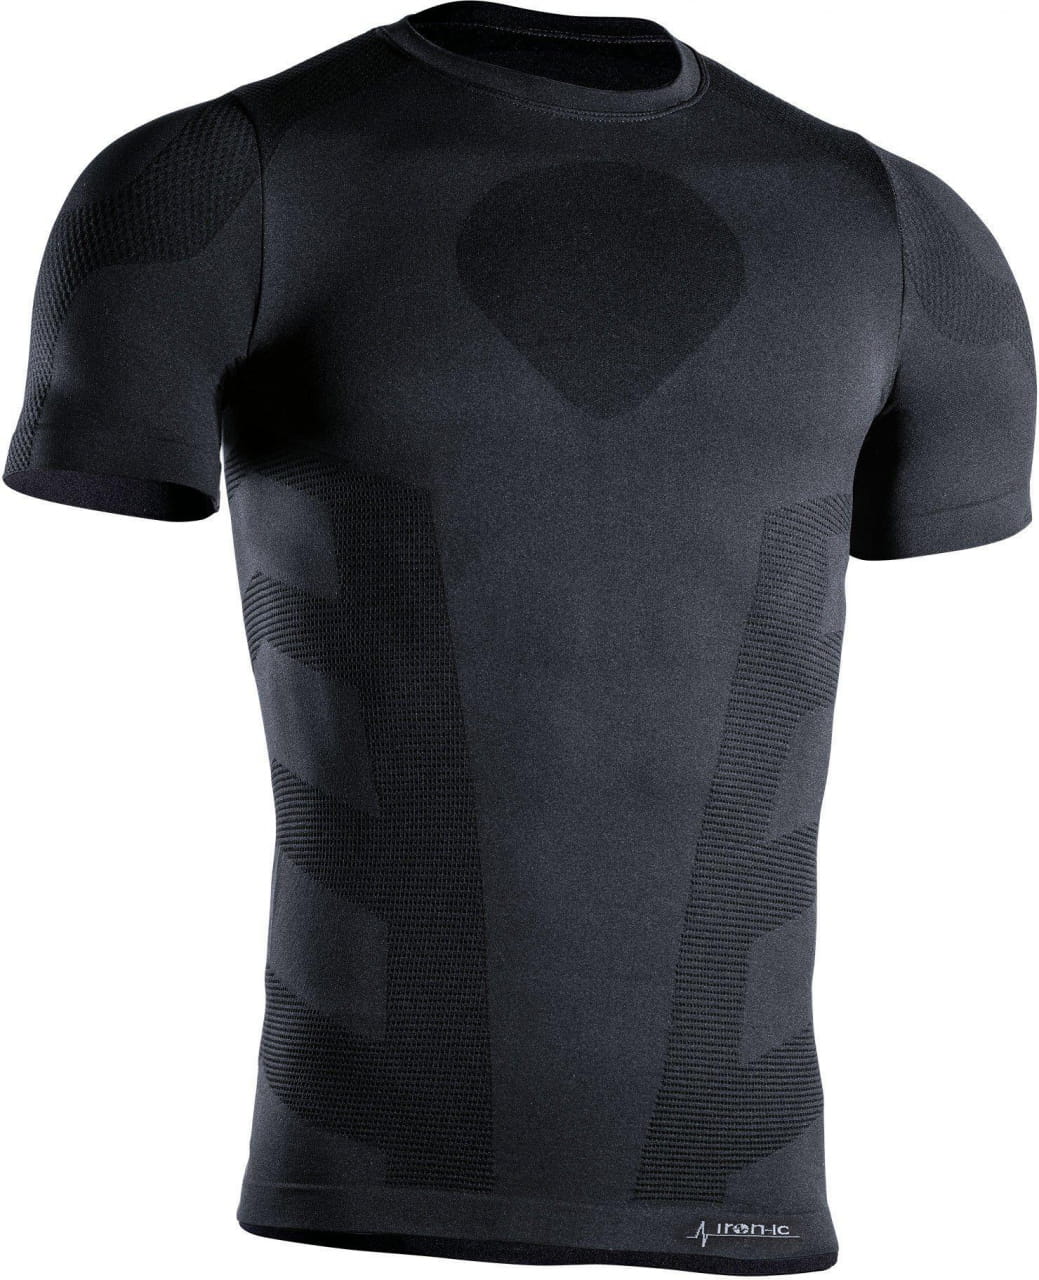 Funktions-Shirt für Männer mit kurzen Ärmeln Iron-ic T-Shirt Ss Man 4.1